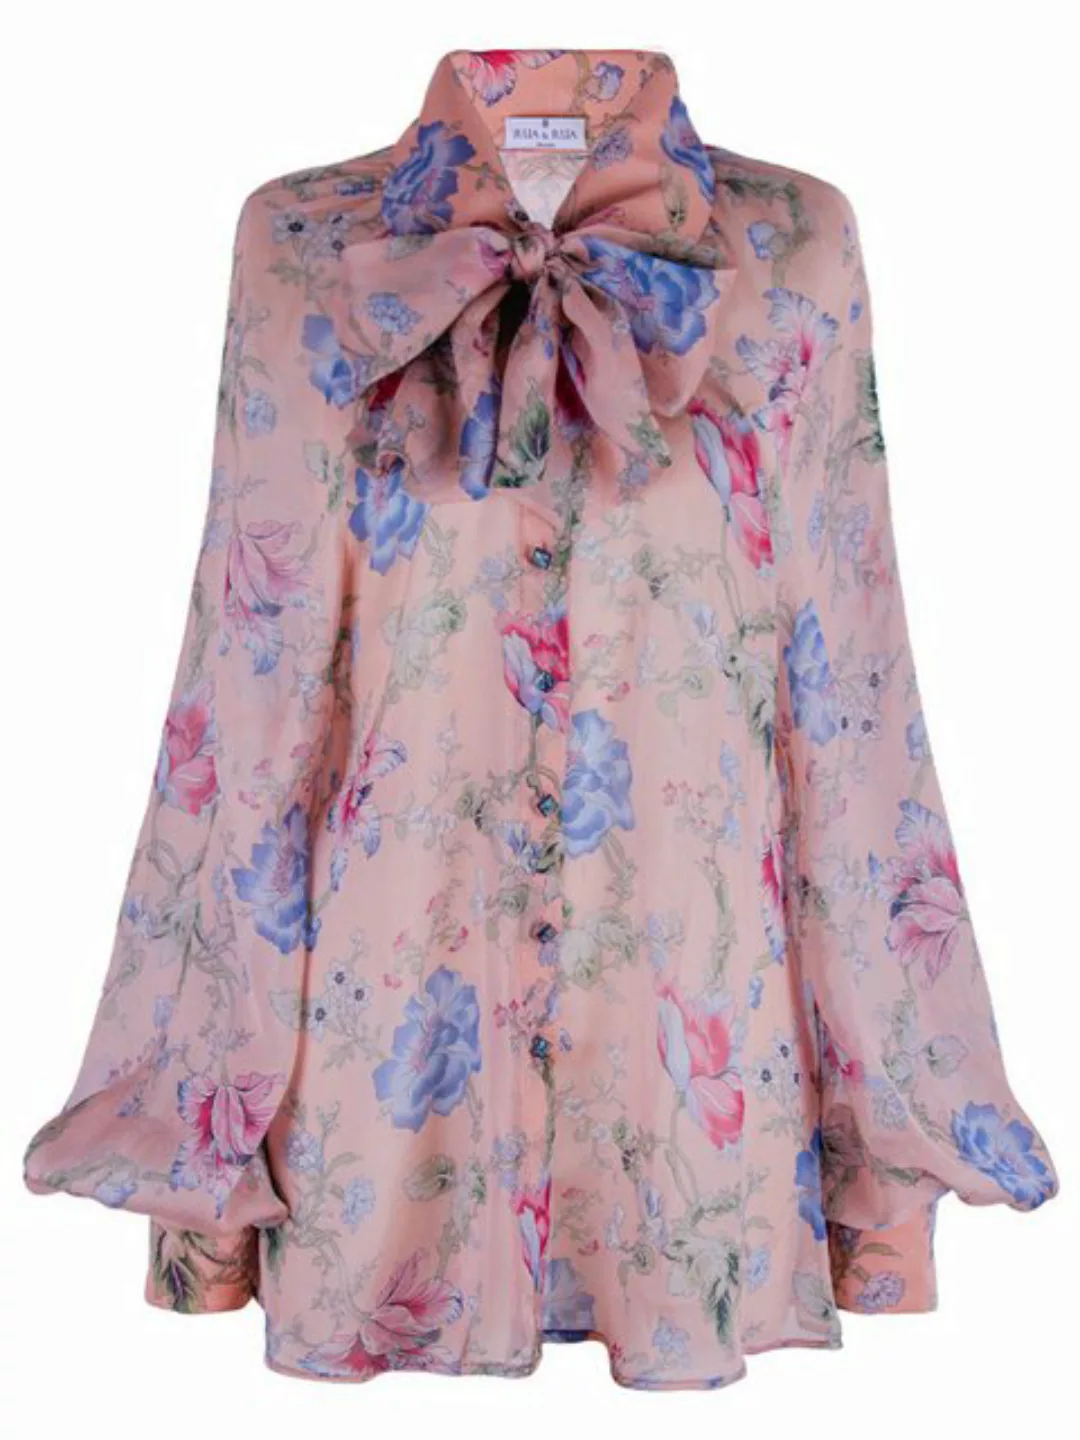 RUA & RUA Chiffonbluse Floral Bluse Hemd aus Seide mit Schleifenkragen Mehr günstig online kaufen